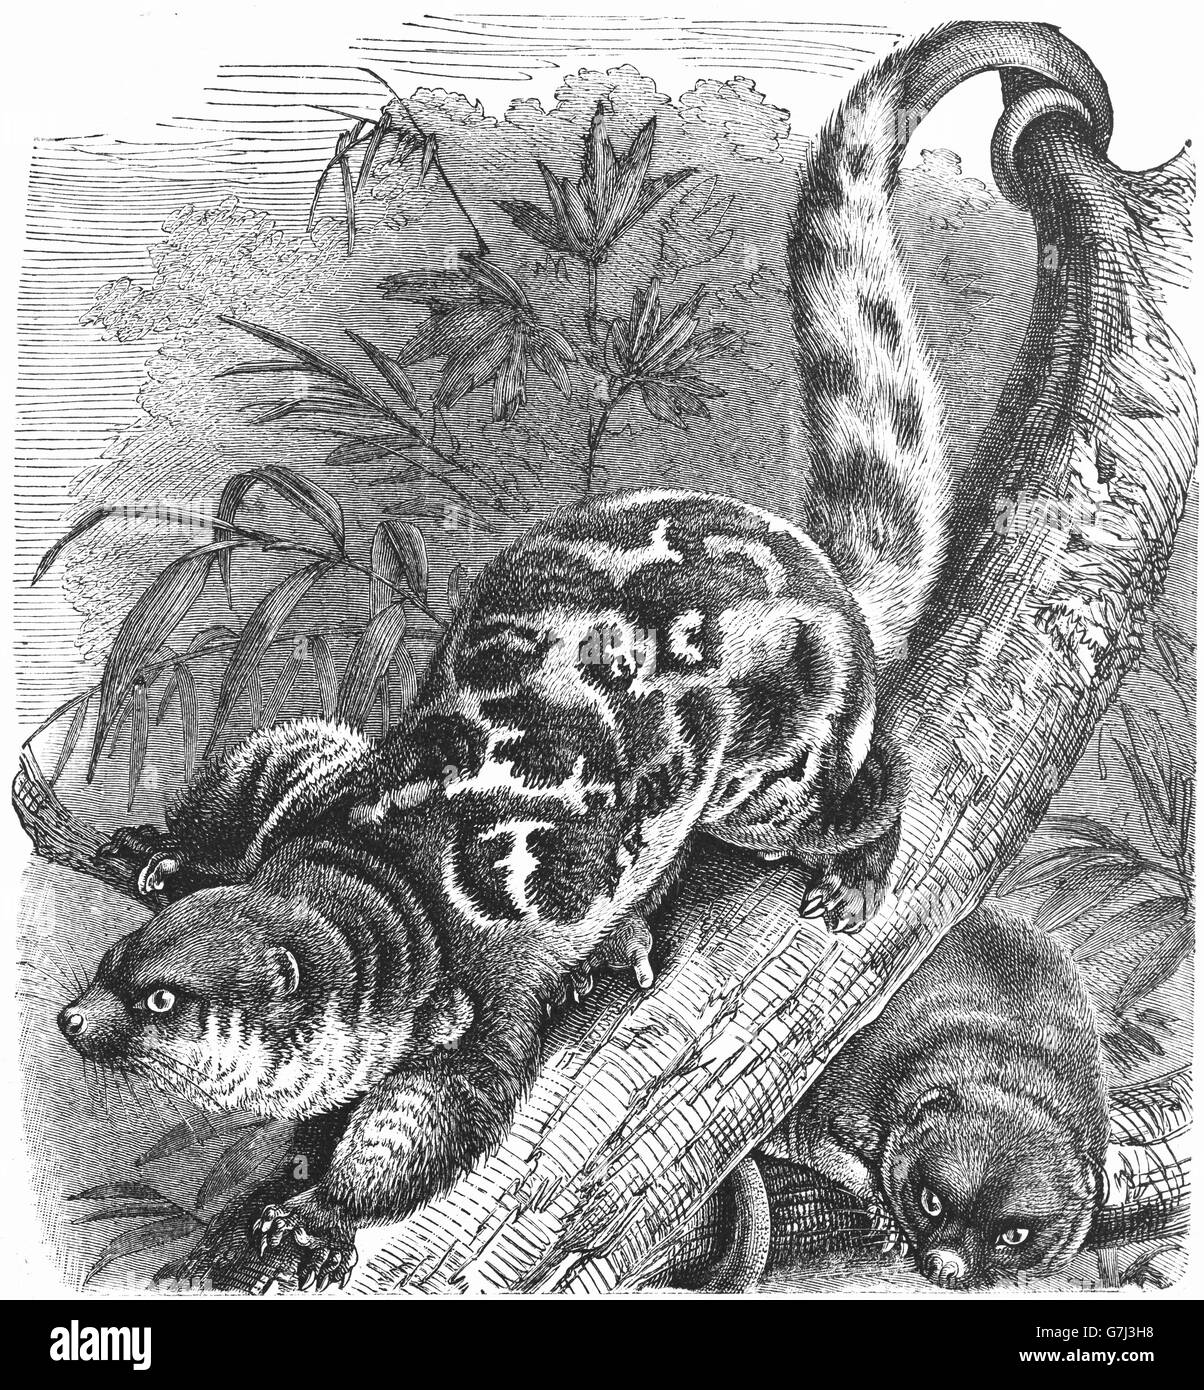 La commune le couscous, Spilocuscus maculatus, illustration de livre daté 1904 Banque D'Images